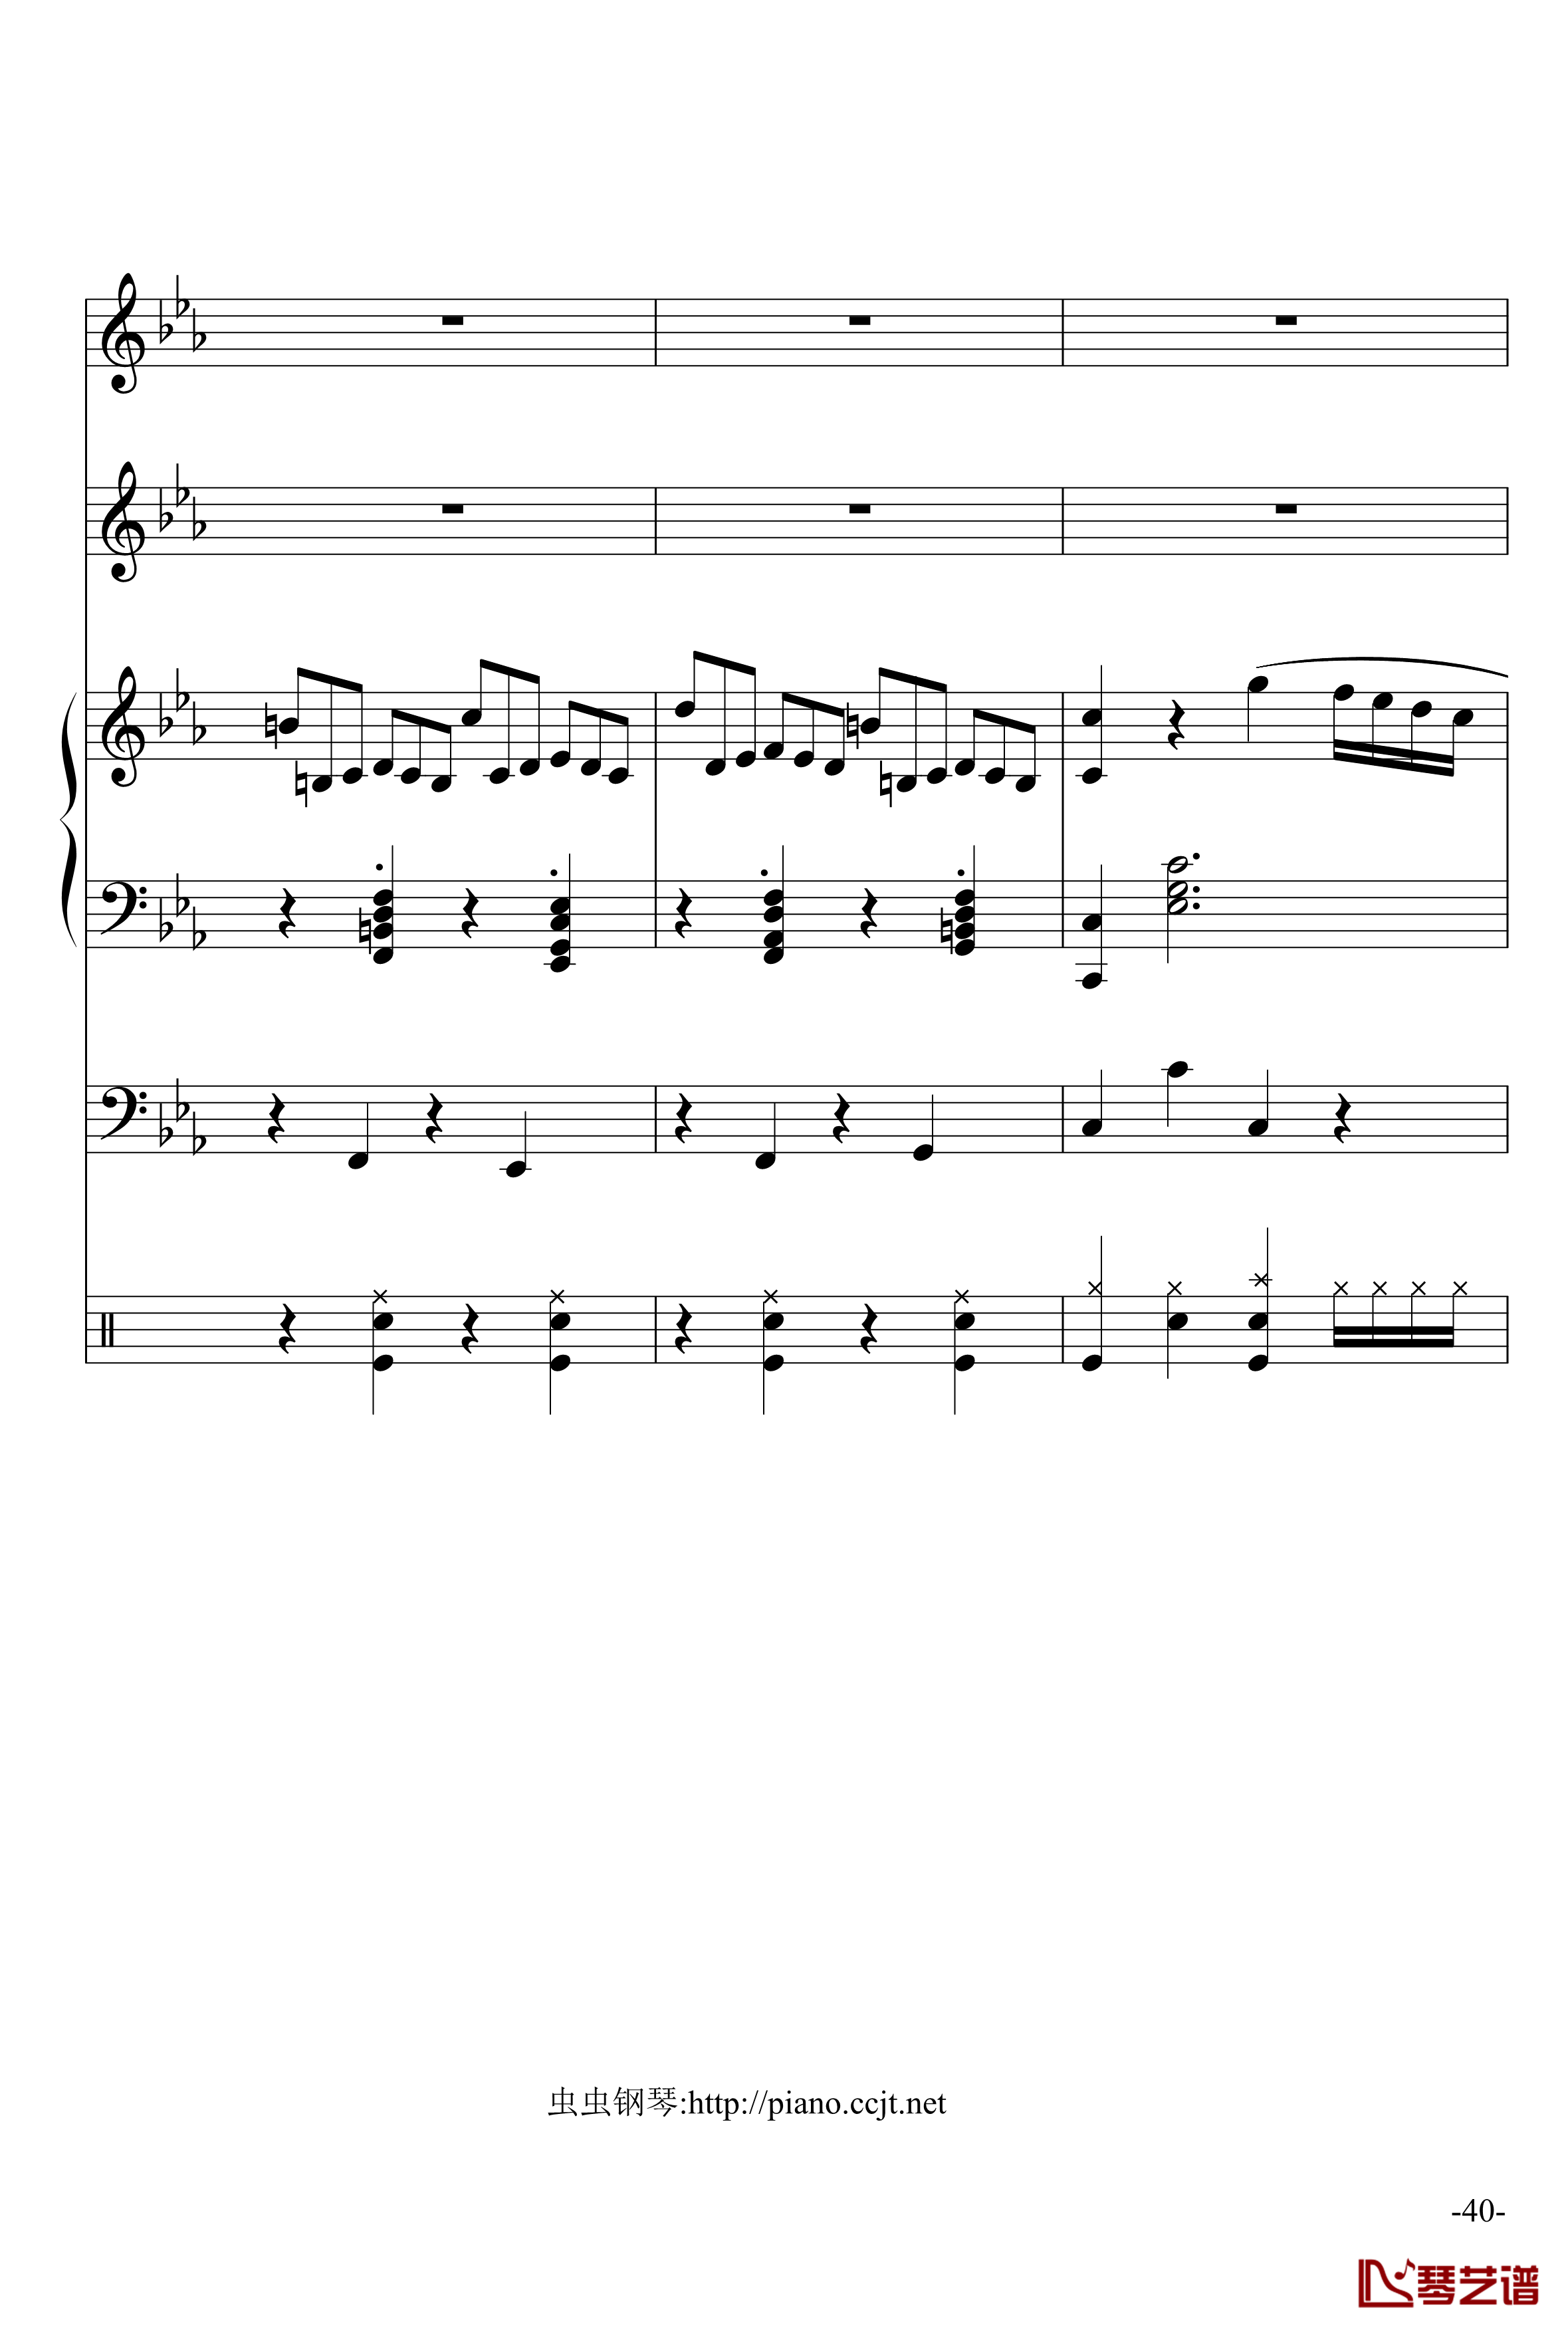 悲怆奏鸣曲钢琴谱-加小乐队-贝多芬-beethoven40